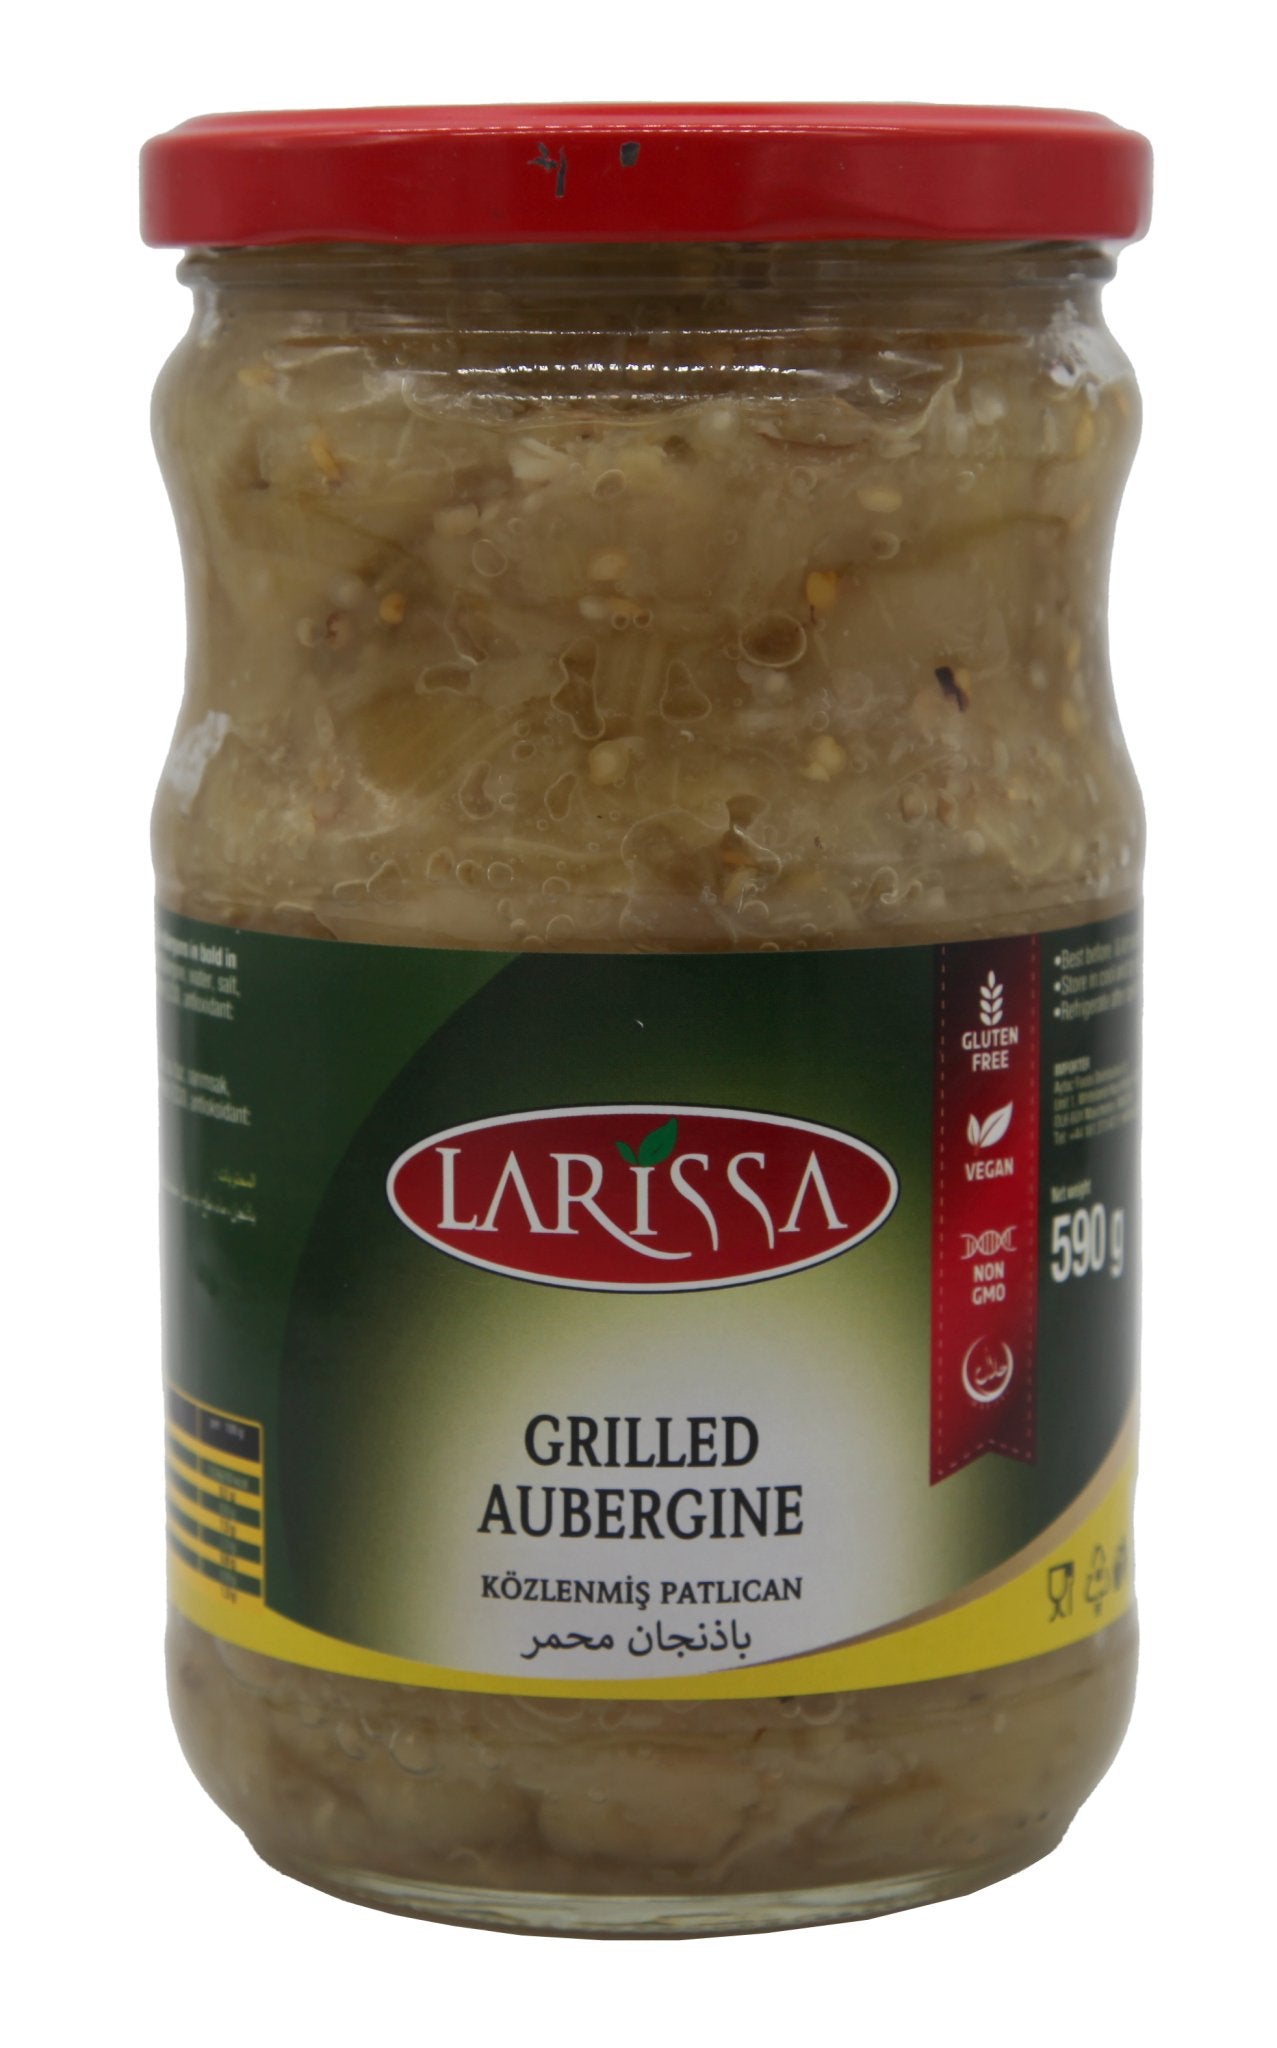 Larissa Grilled Auburgine (660CC) - Aytac Foods